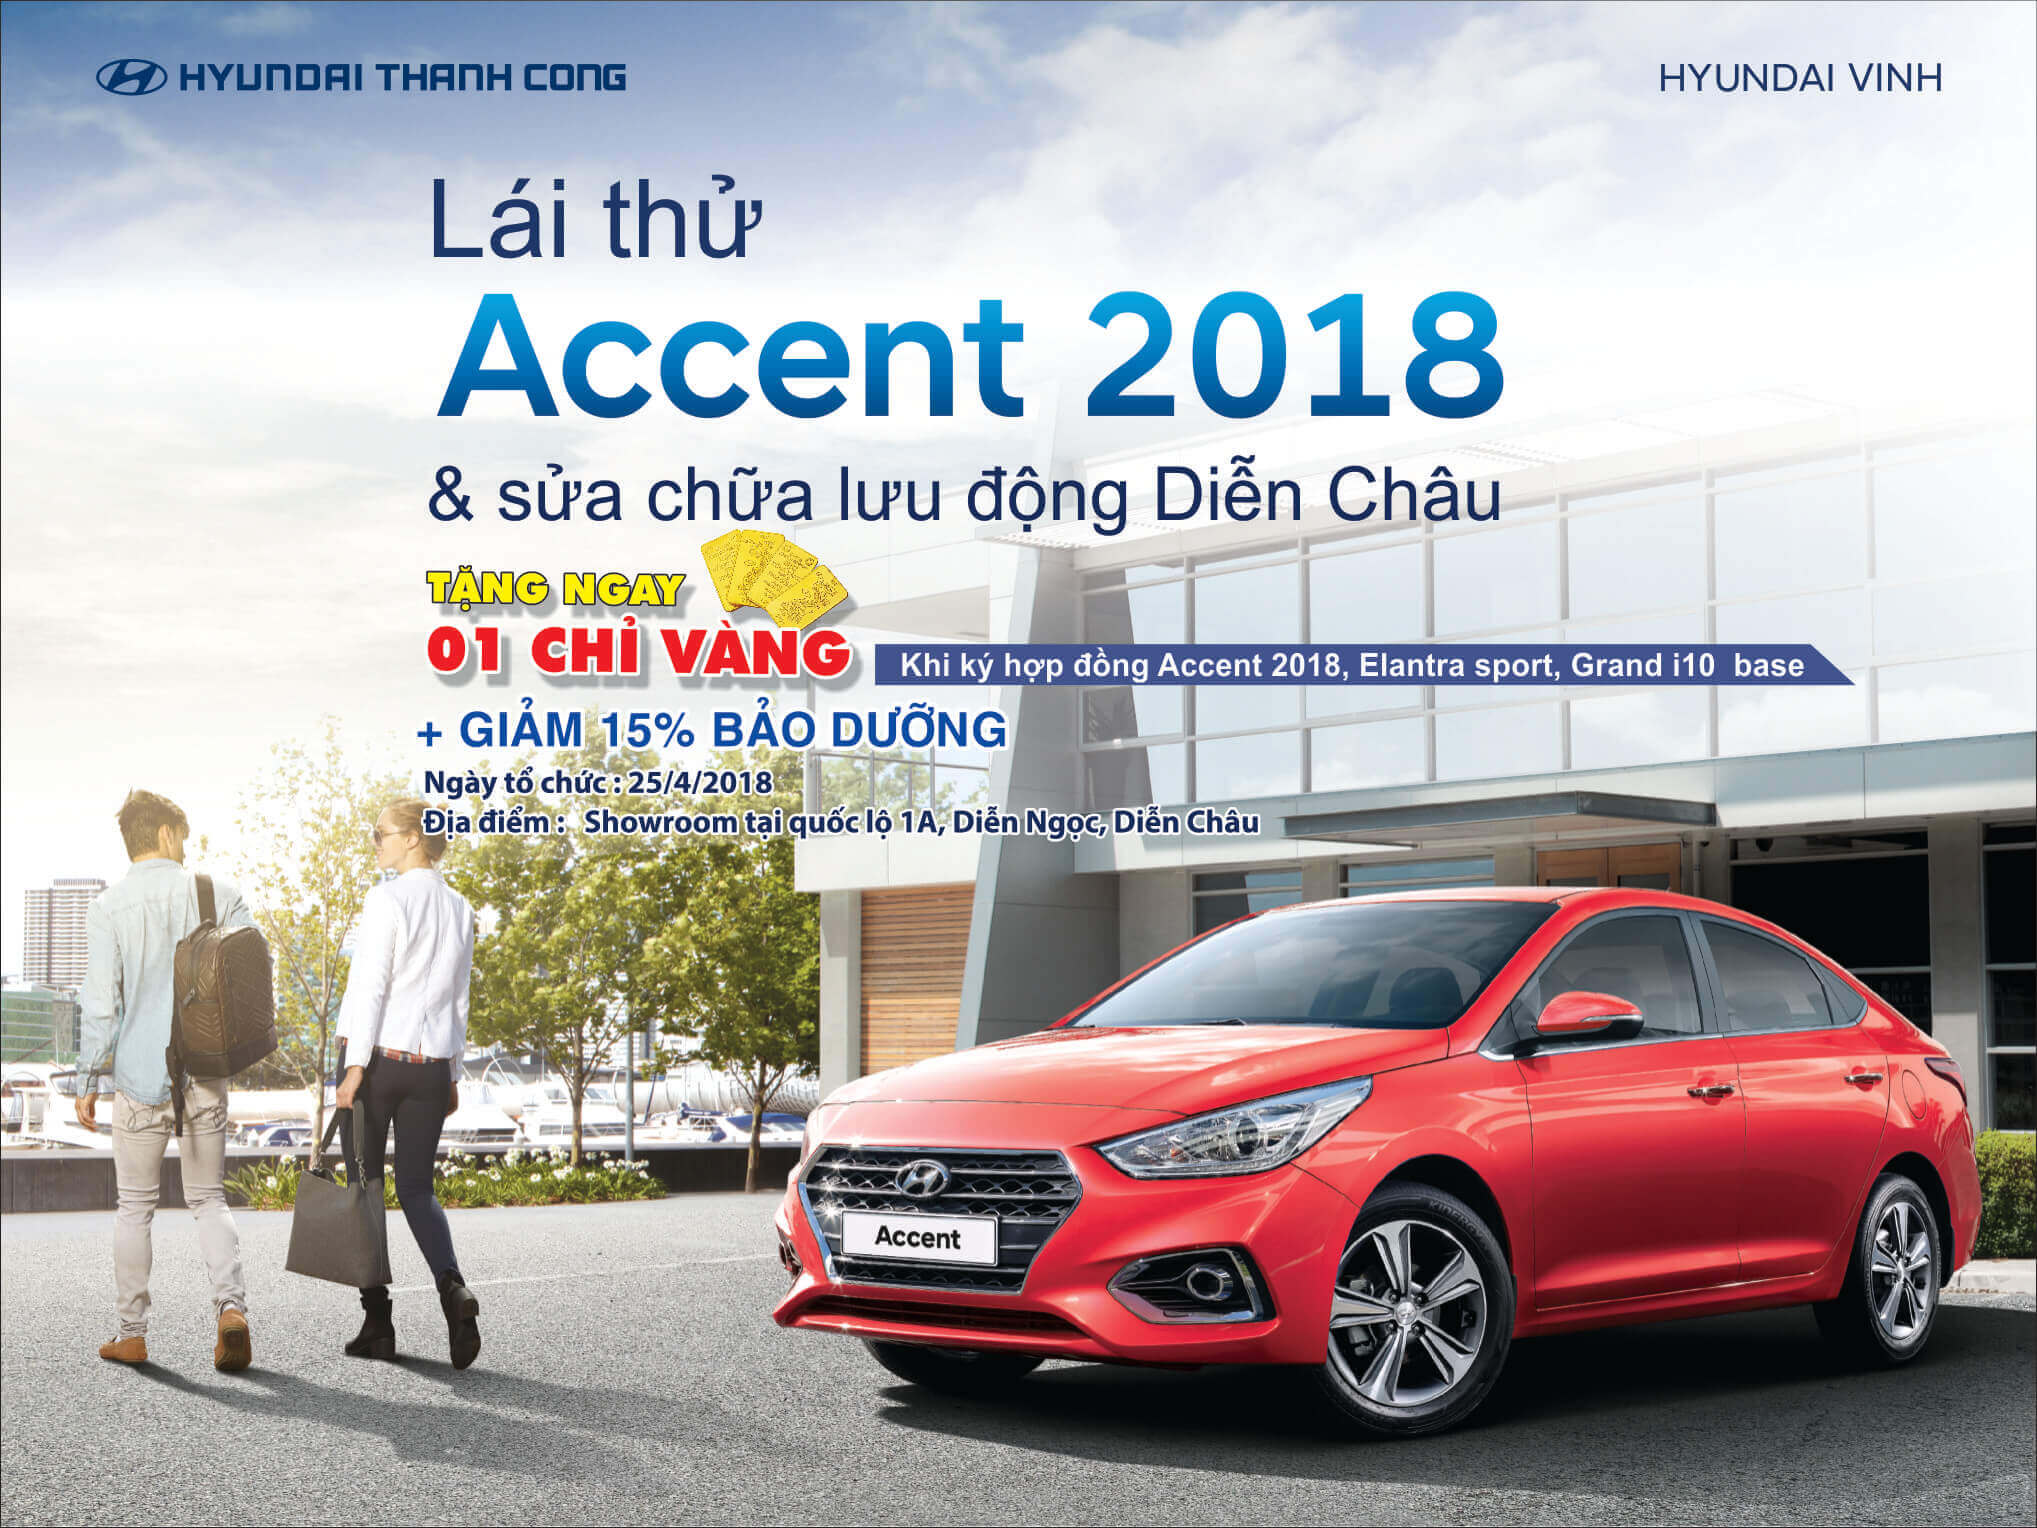 Lái thử Accent 2018 và sửa chữa lưu động tại Diễn Châu